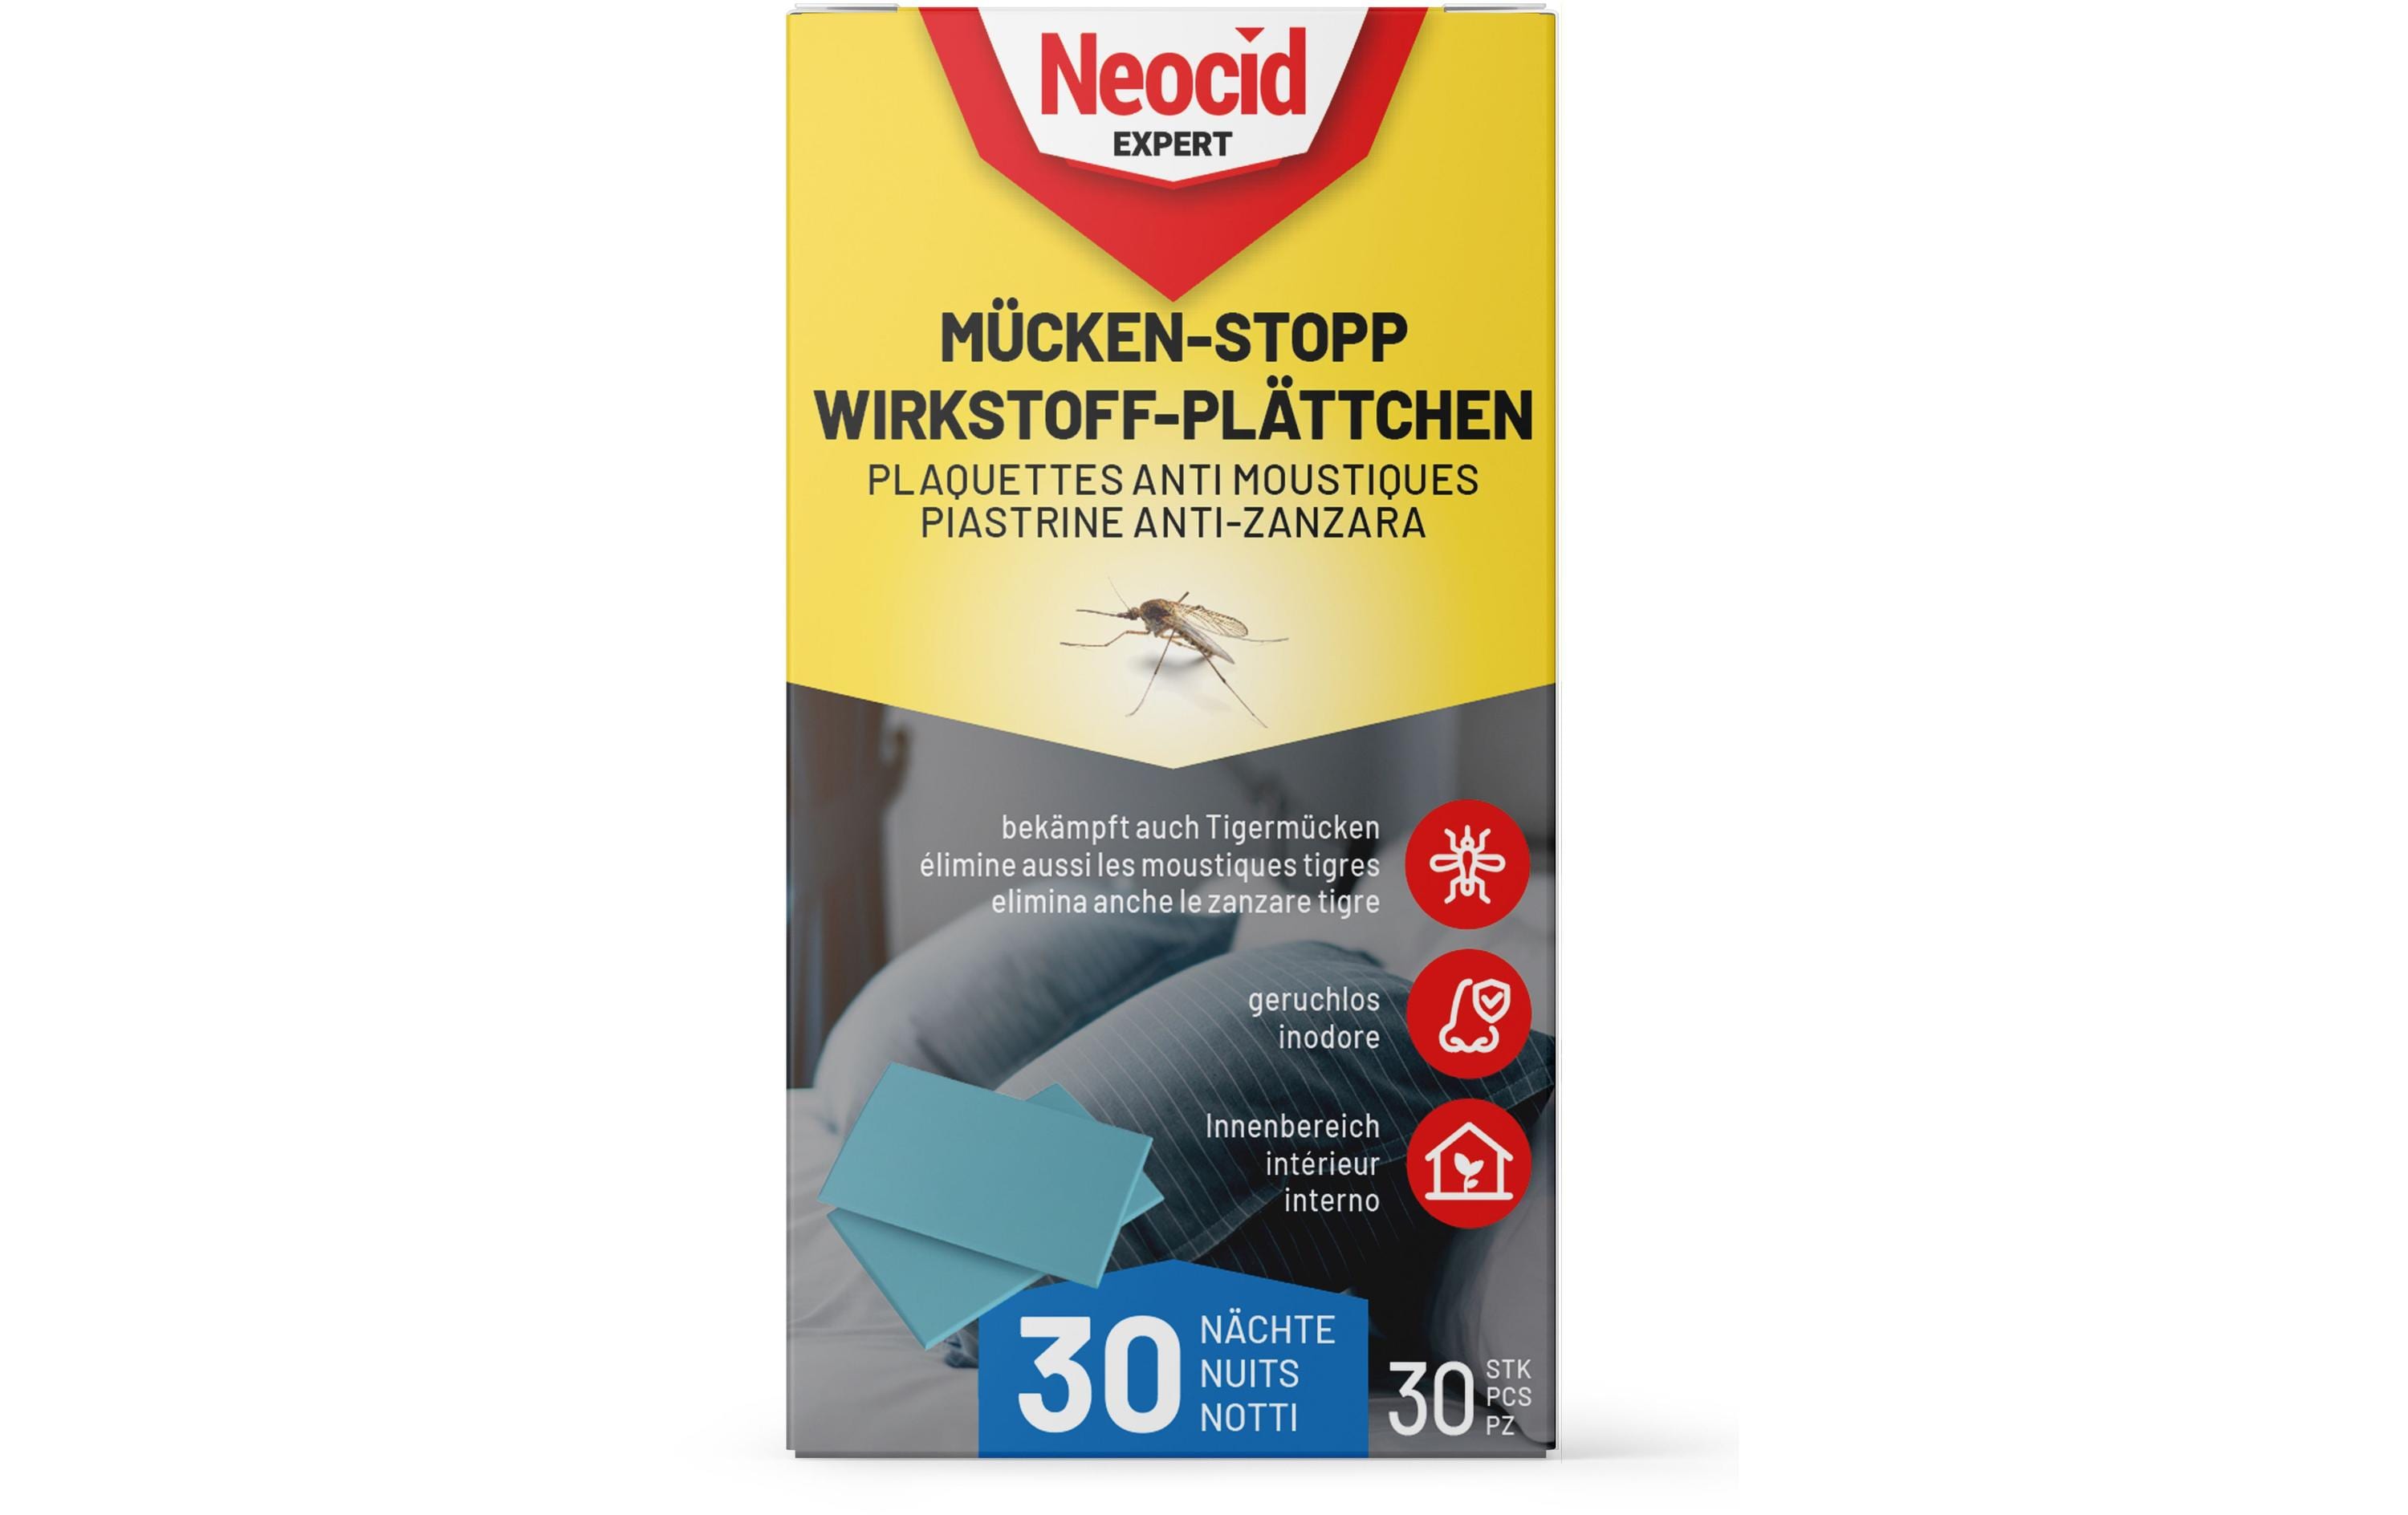 Neocid Expert Mückenstecker Mücken-Stopp Wirkstoff-Plättchen, 30 Stück